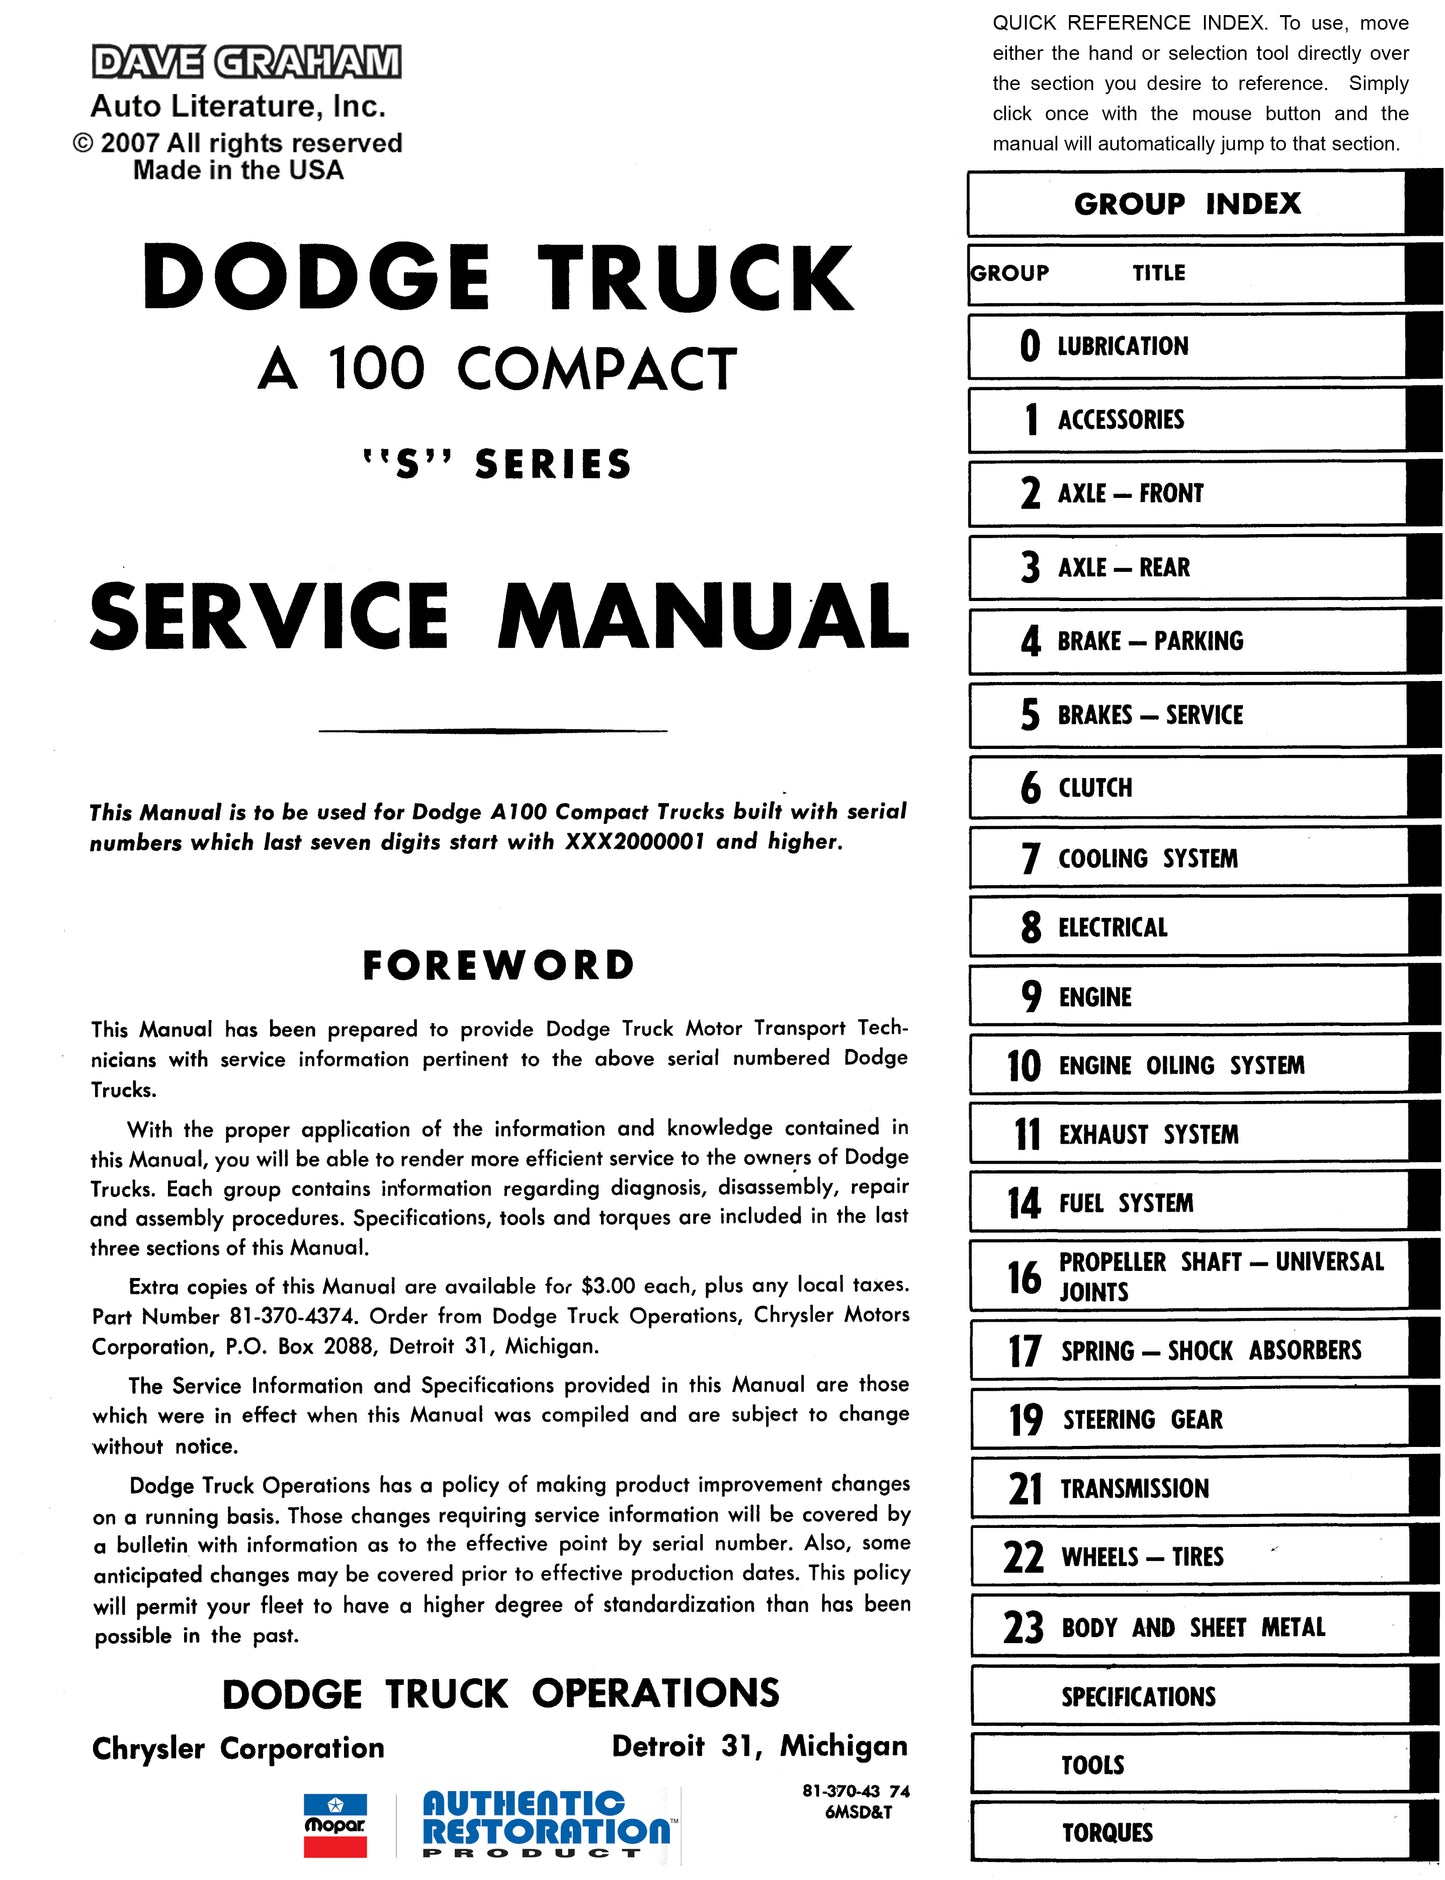 1964 Dodge Truck & 1964-1965 Van Shop Manual - All Models